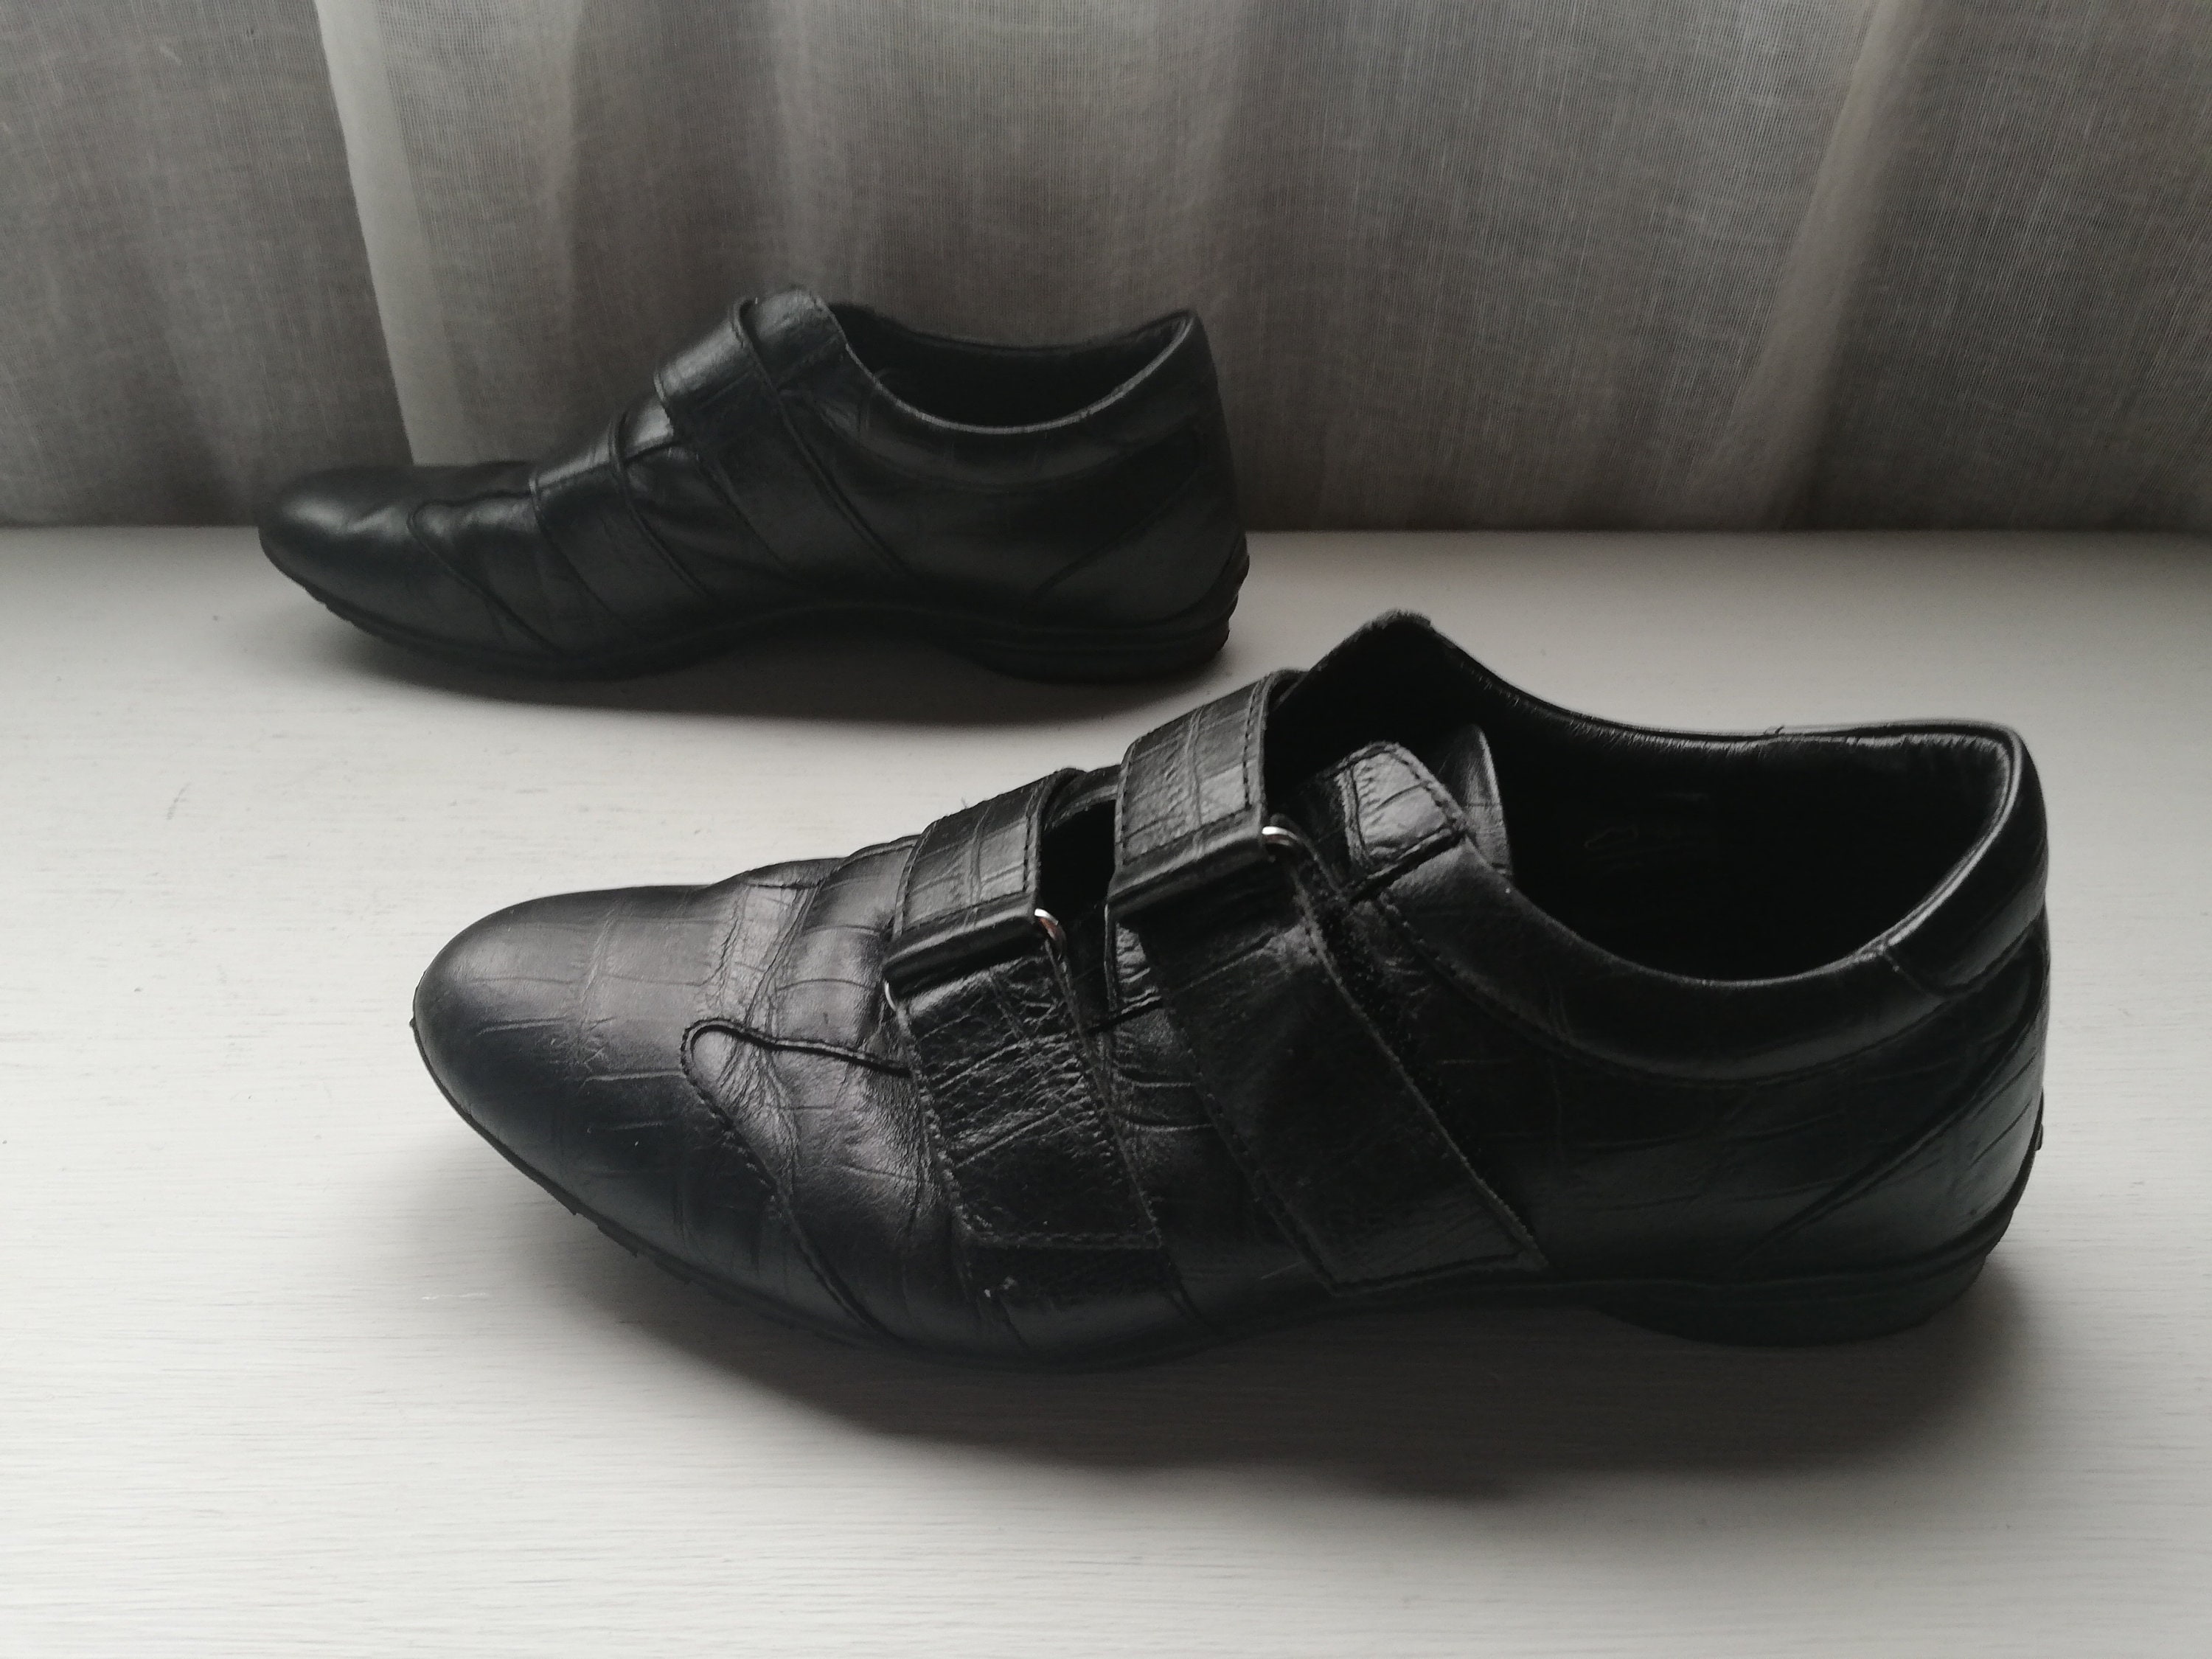 GEOX Zapatos de cuero negro Talla 38 eur 6.5 us 5.5 uk. - Etsy México